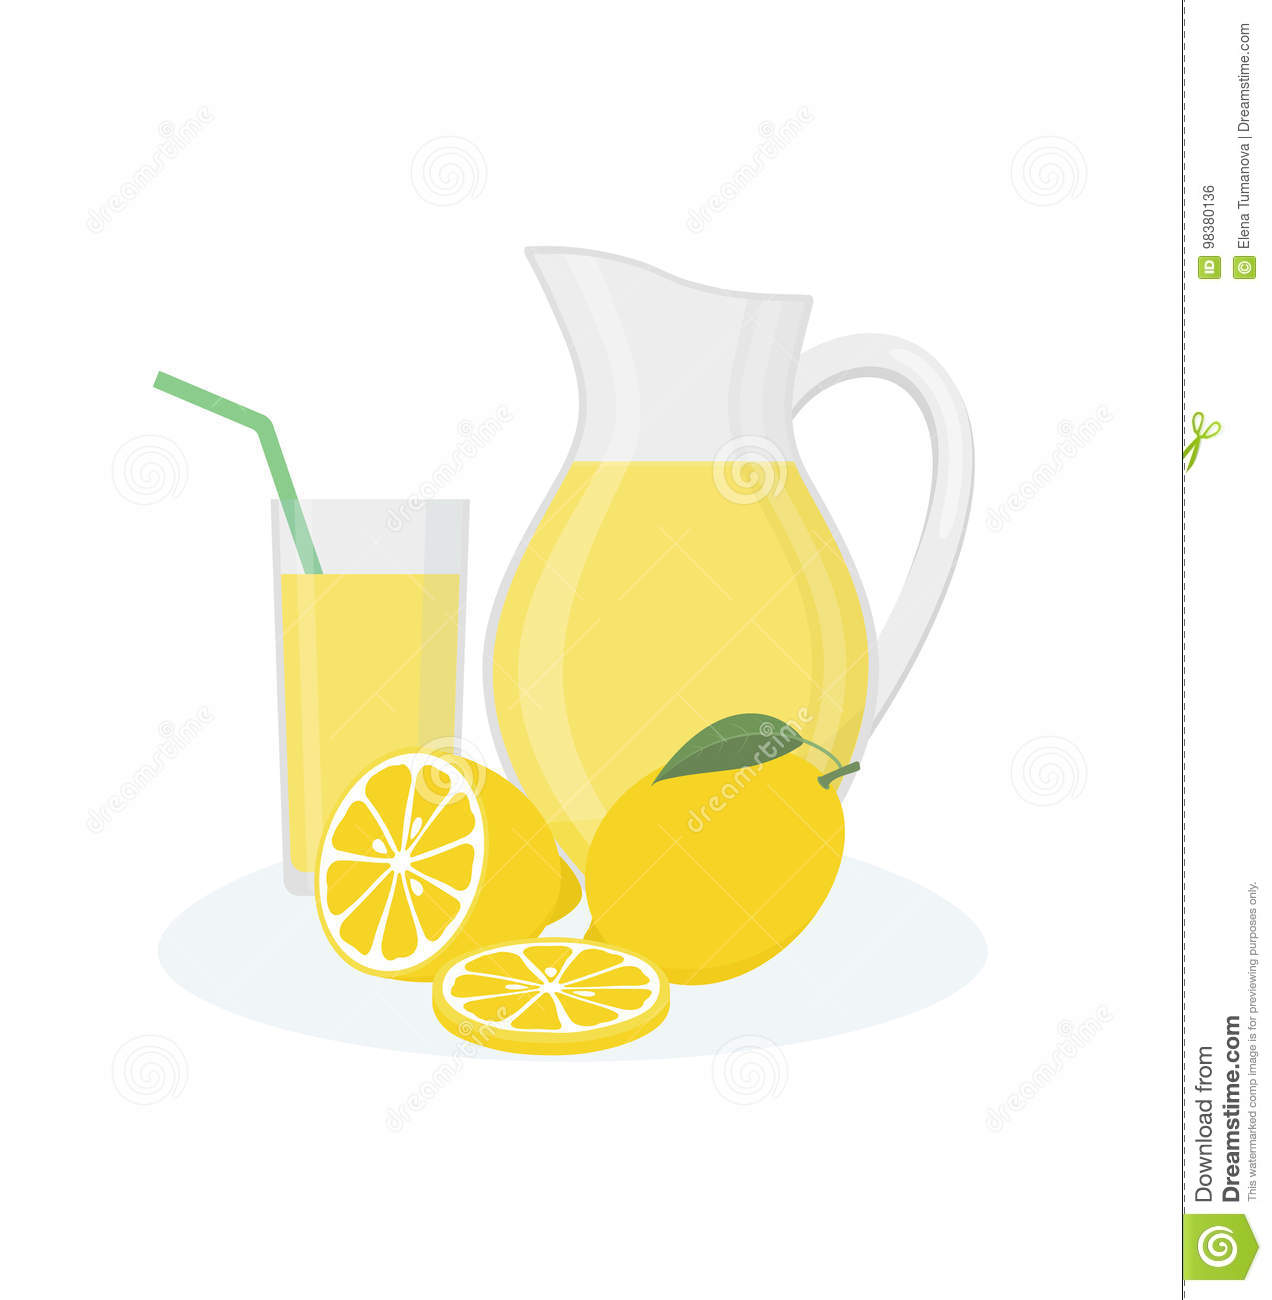 Lemonade pitcher clipart.